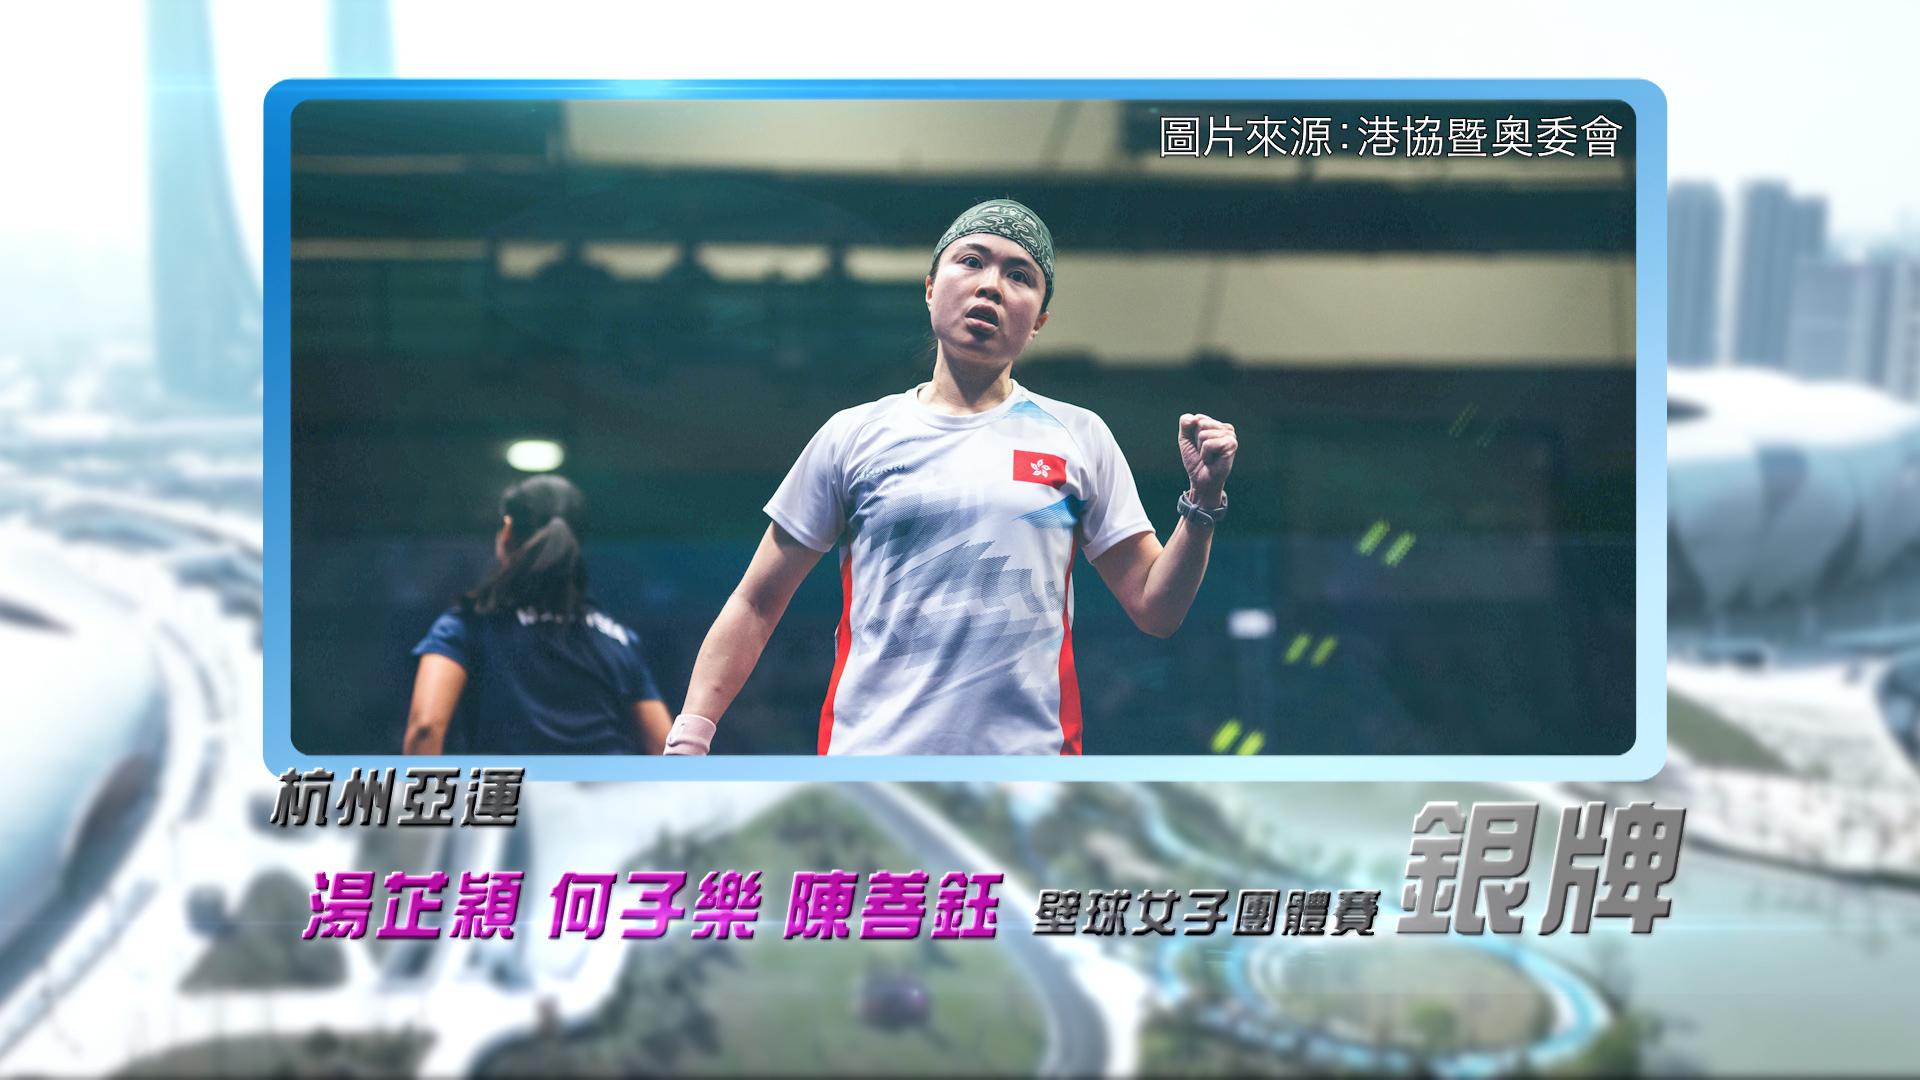 恭喜汤芷颖、何子乐、陈善钰于杭州亚运壁球女子团体赛获得银牌！